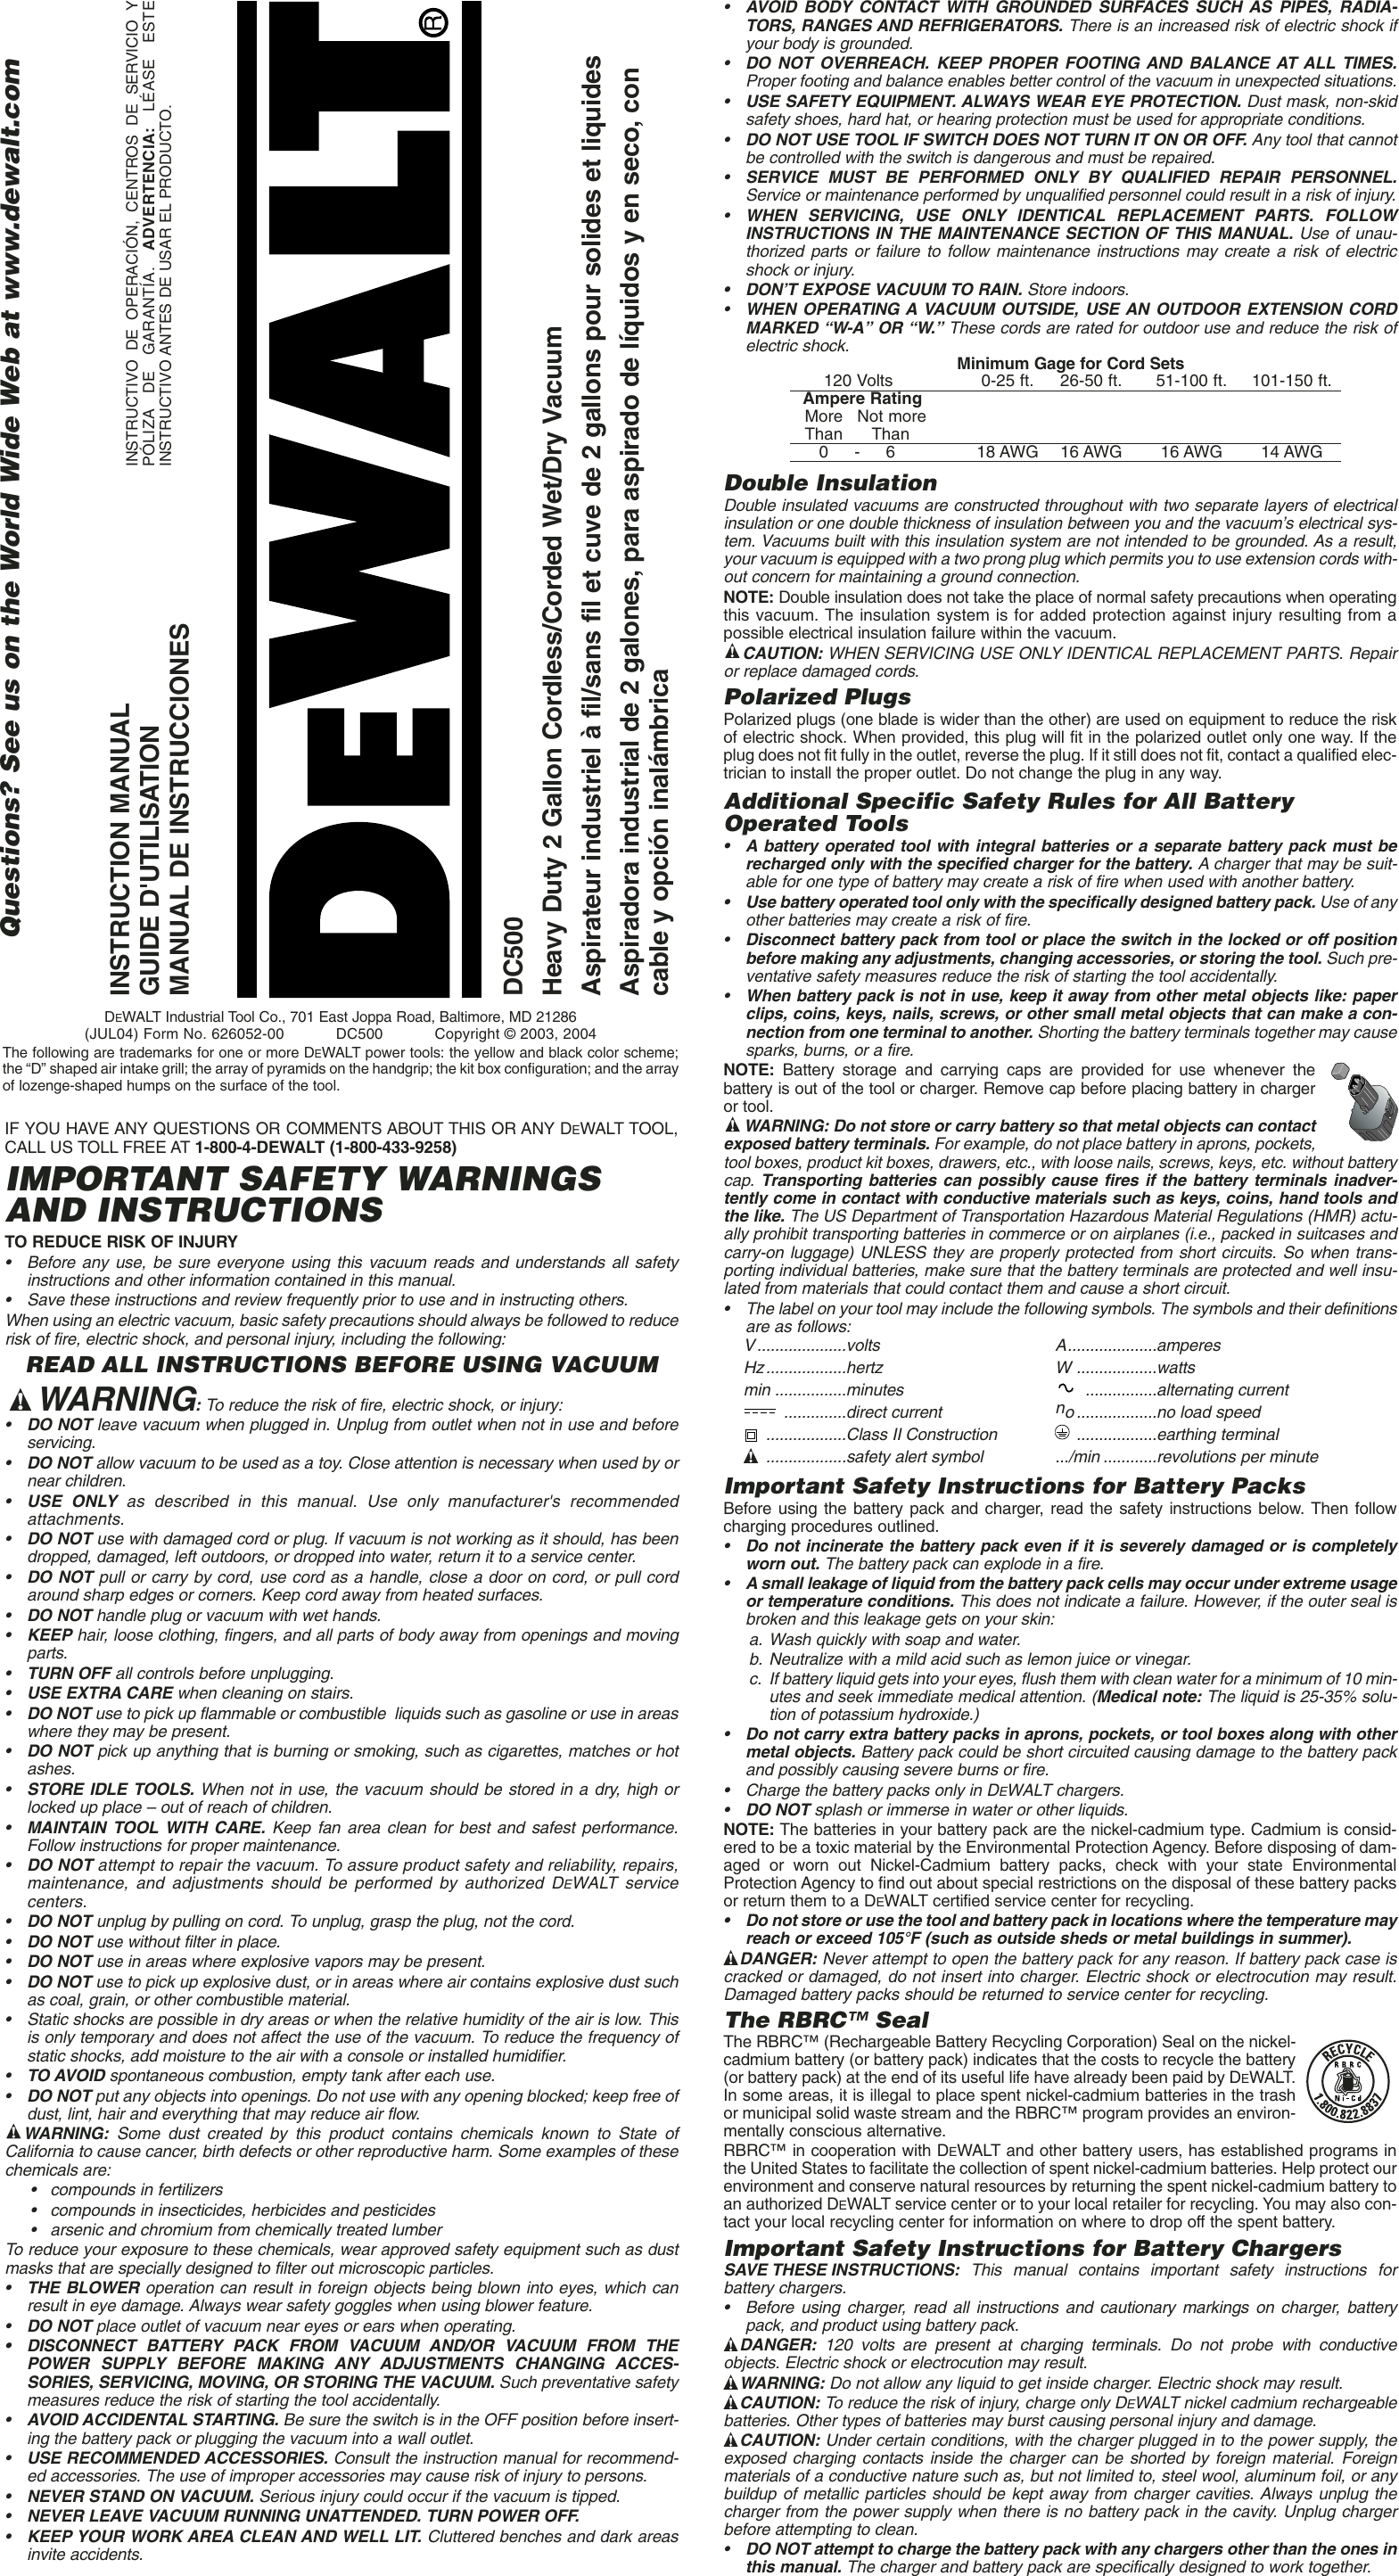 Uplifted Kontinent kaldenavn Dewalt Dc500 Users Manual Print 619475 01,DC500